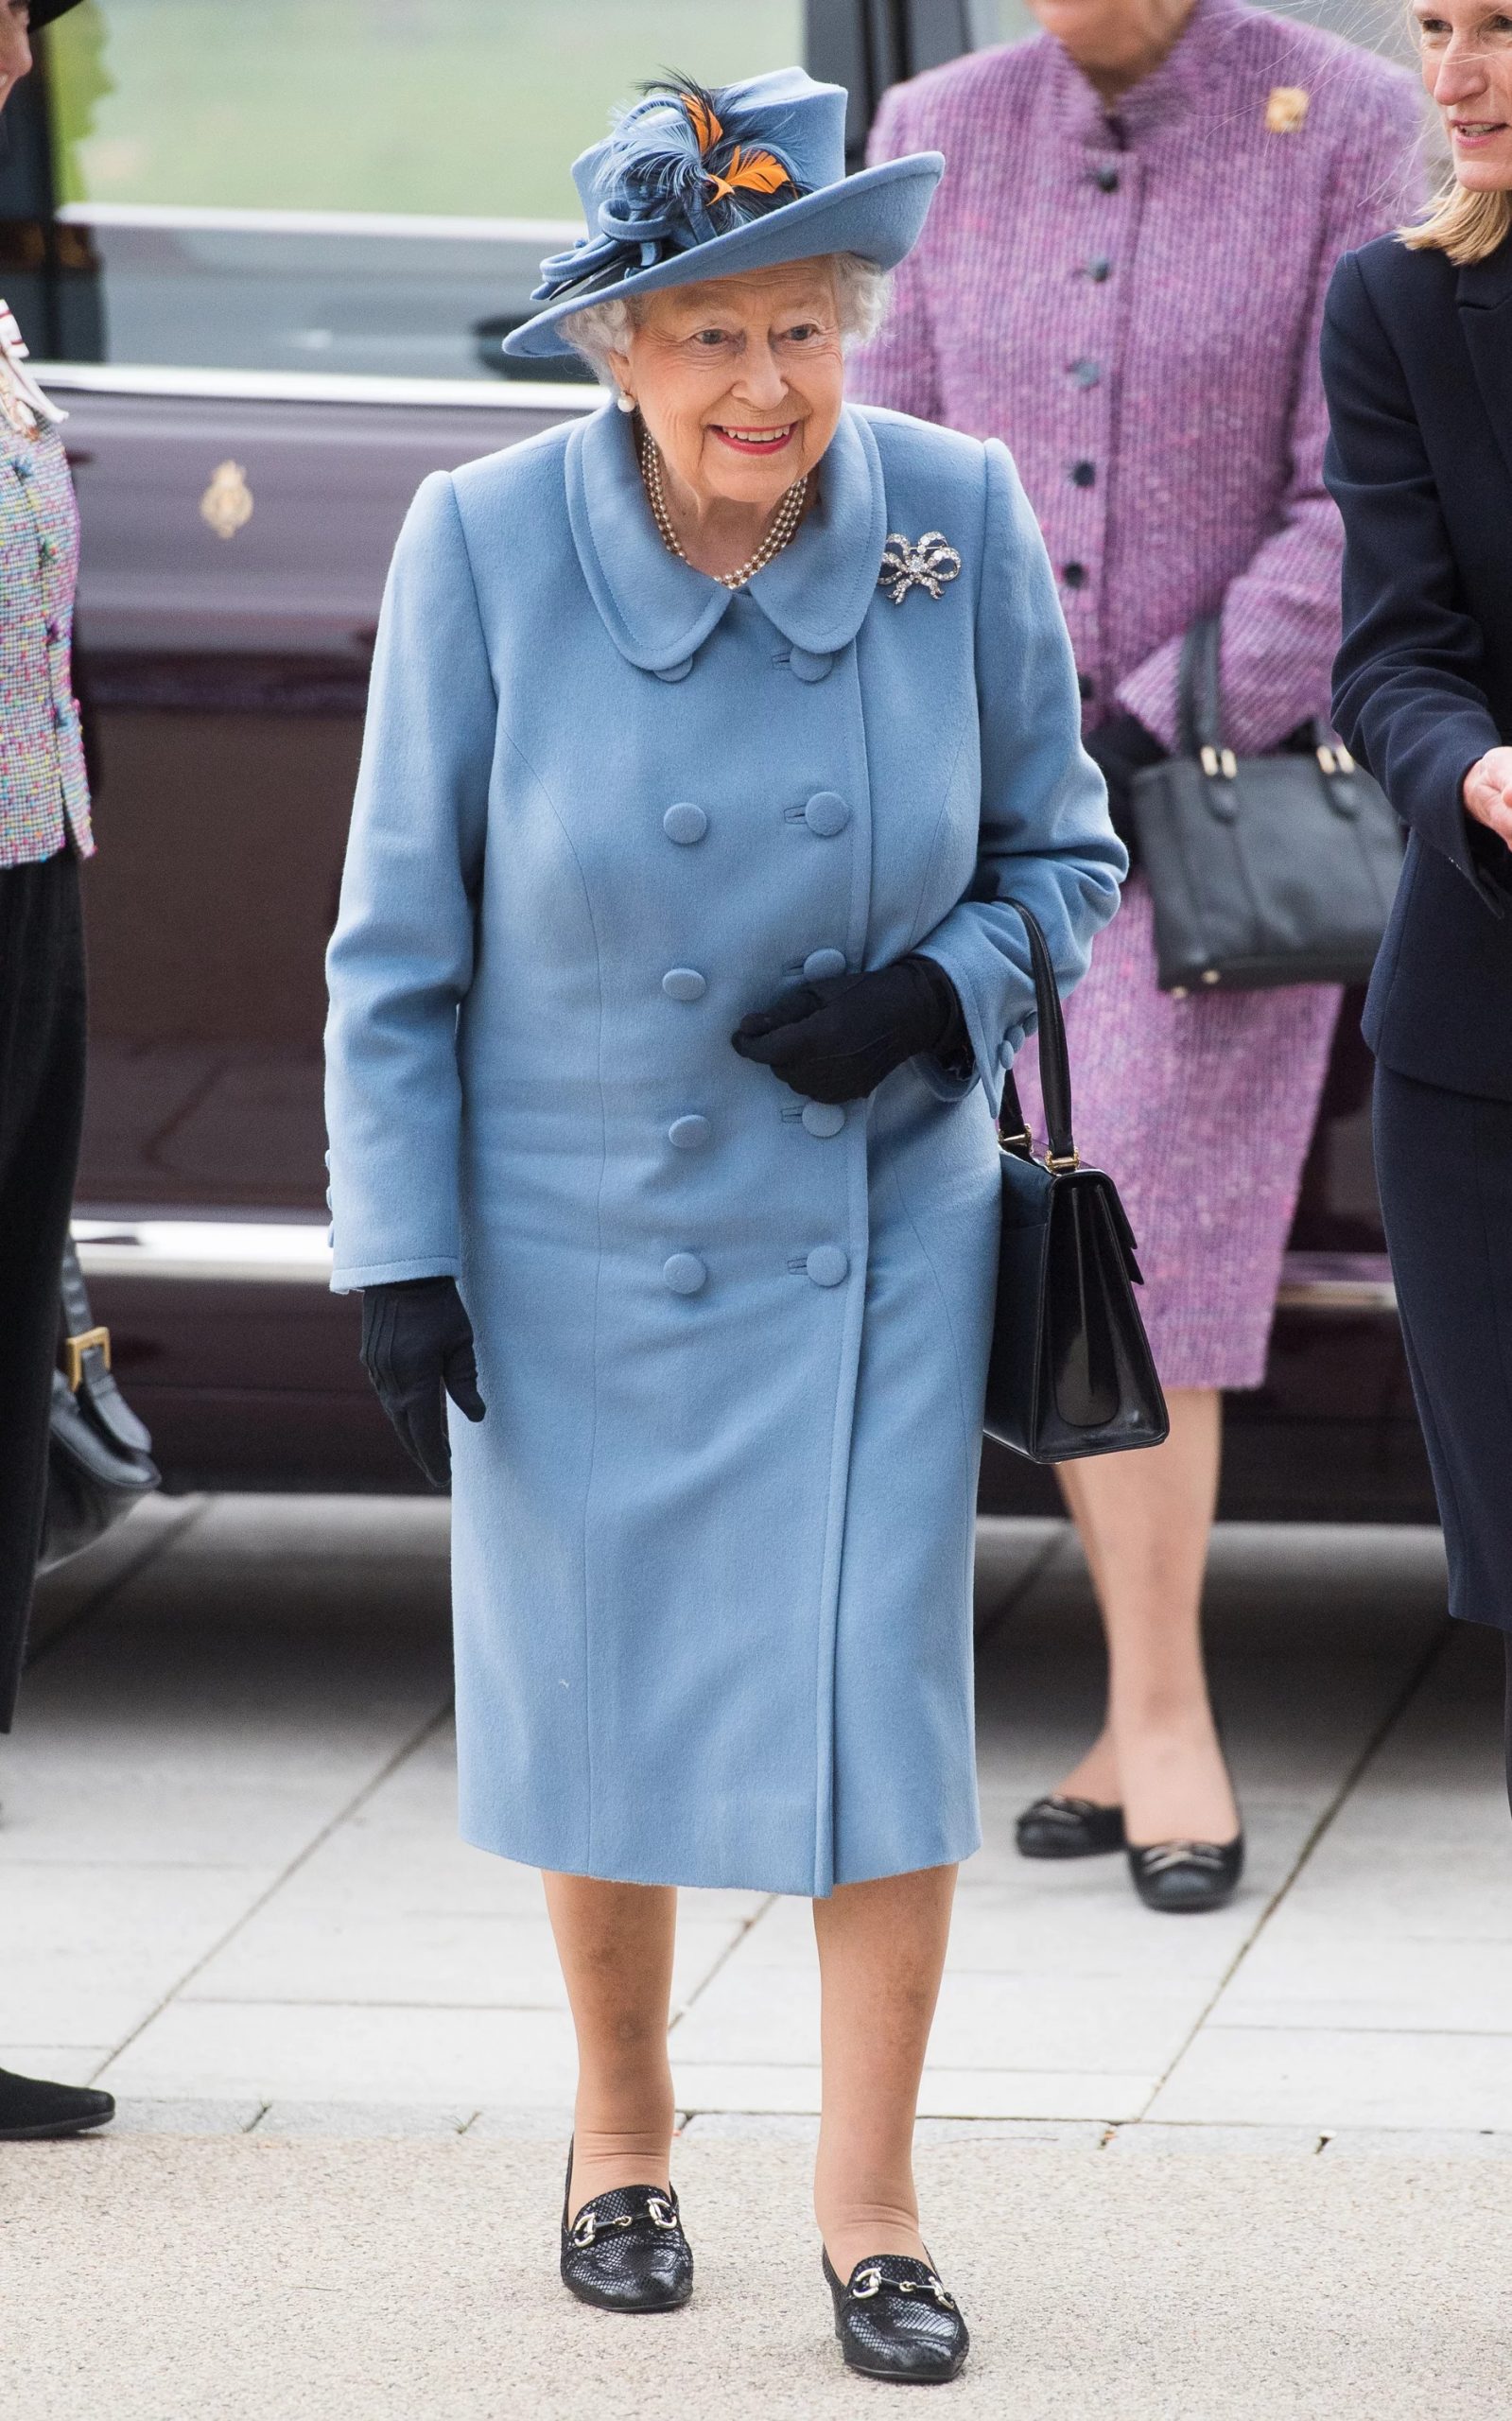 Trang phục xanh lam của nữ hoàng Elizabeth II